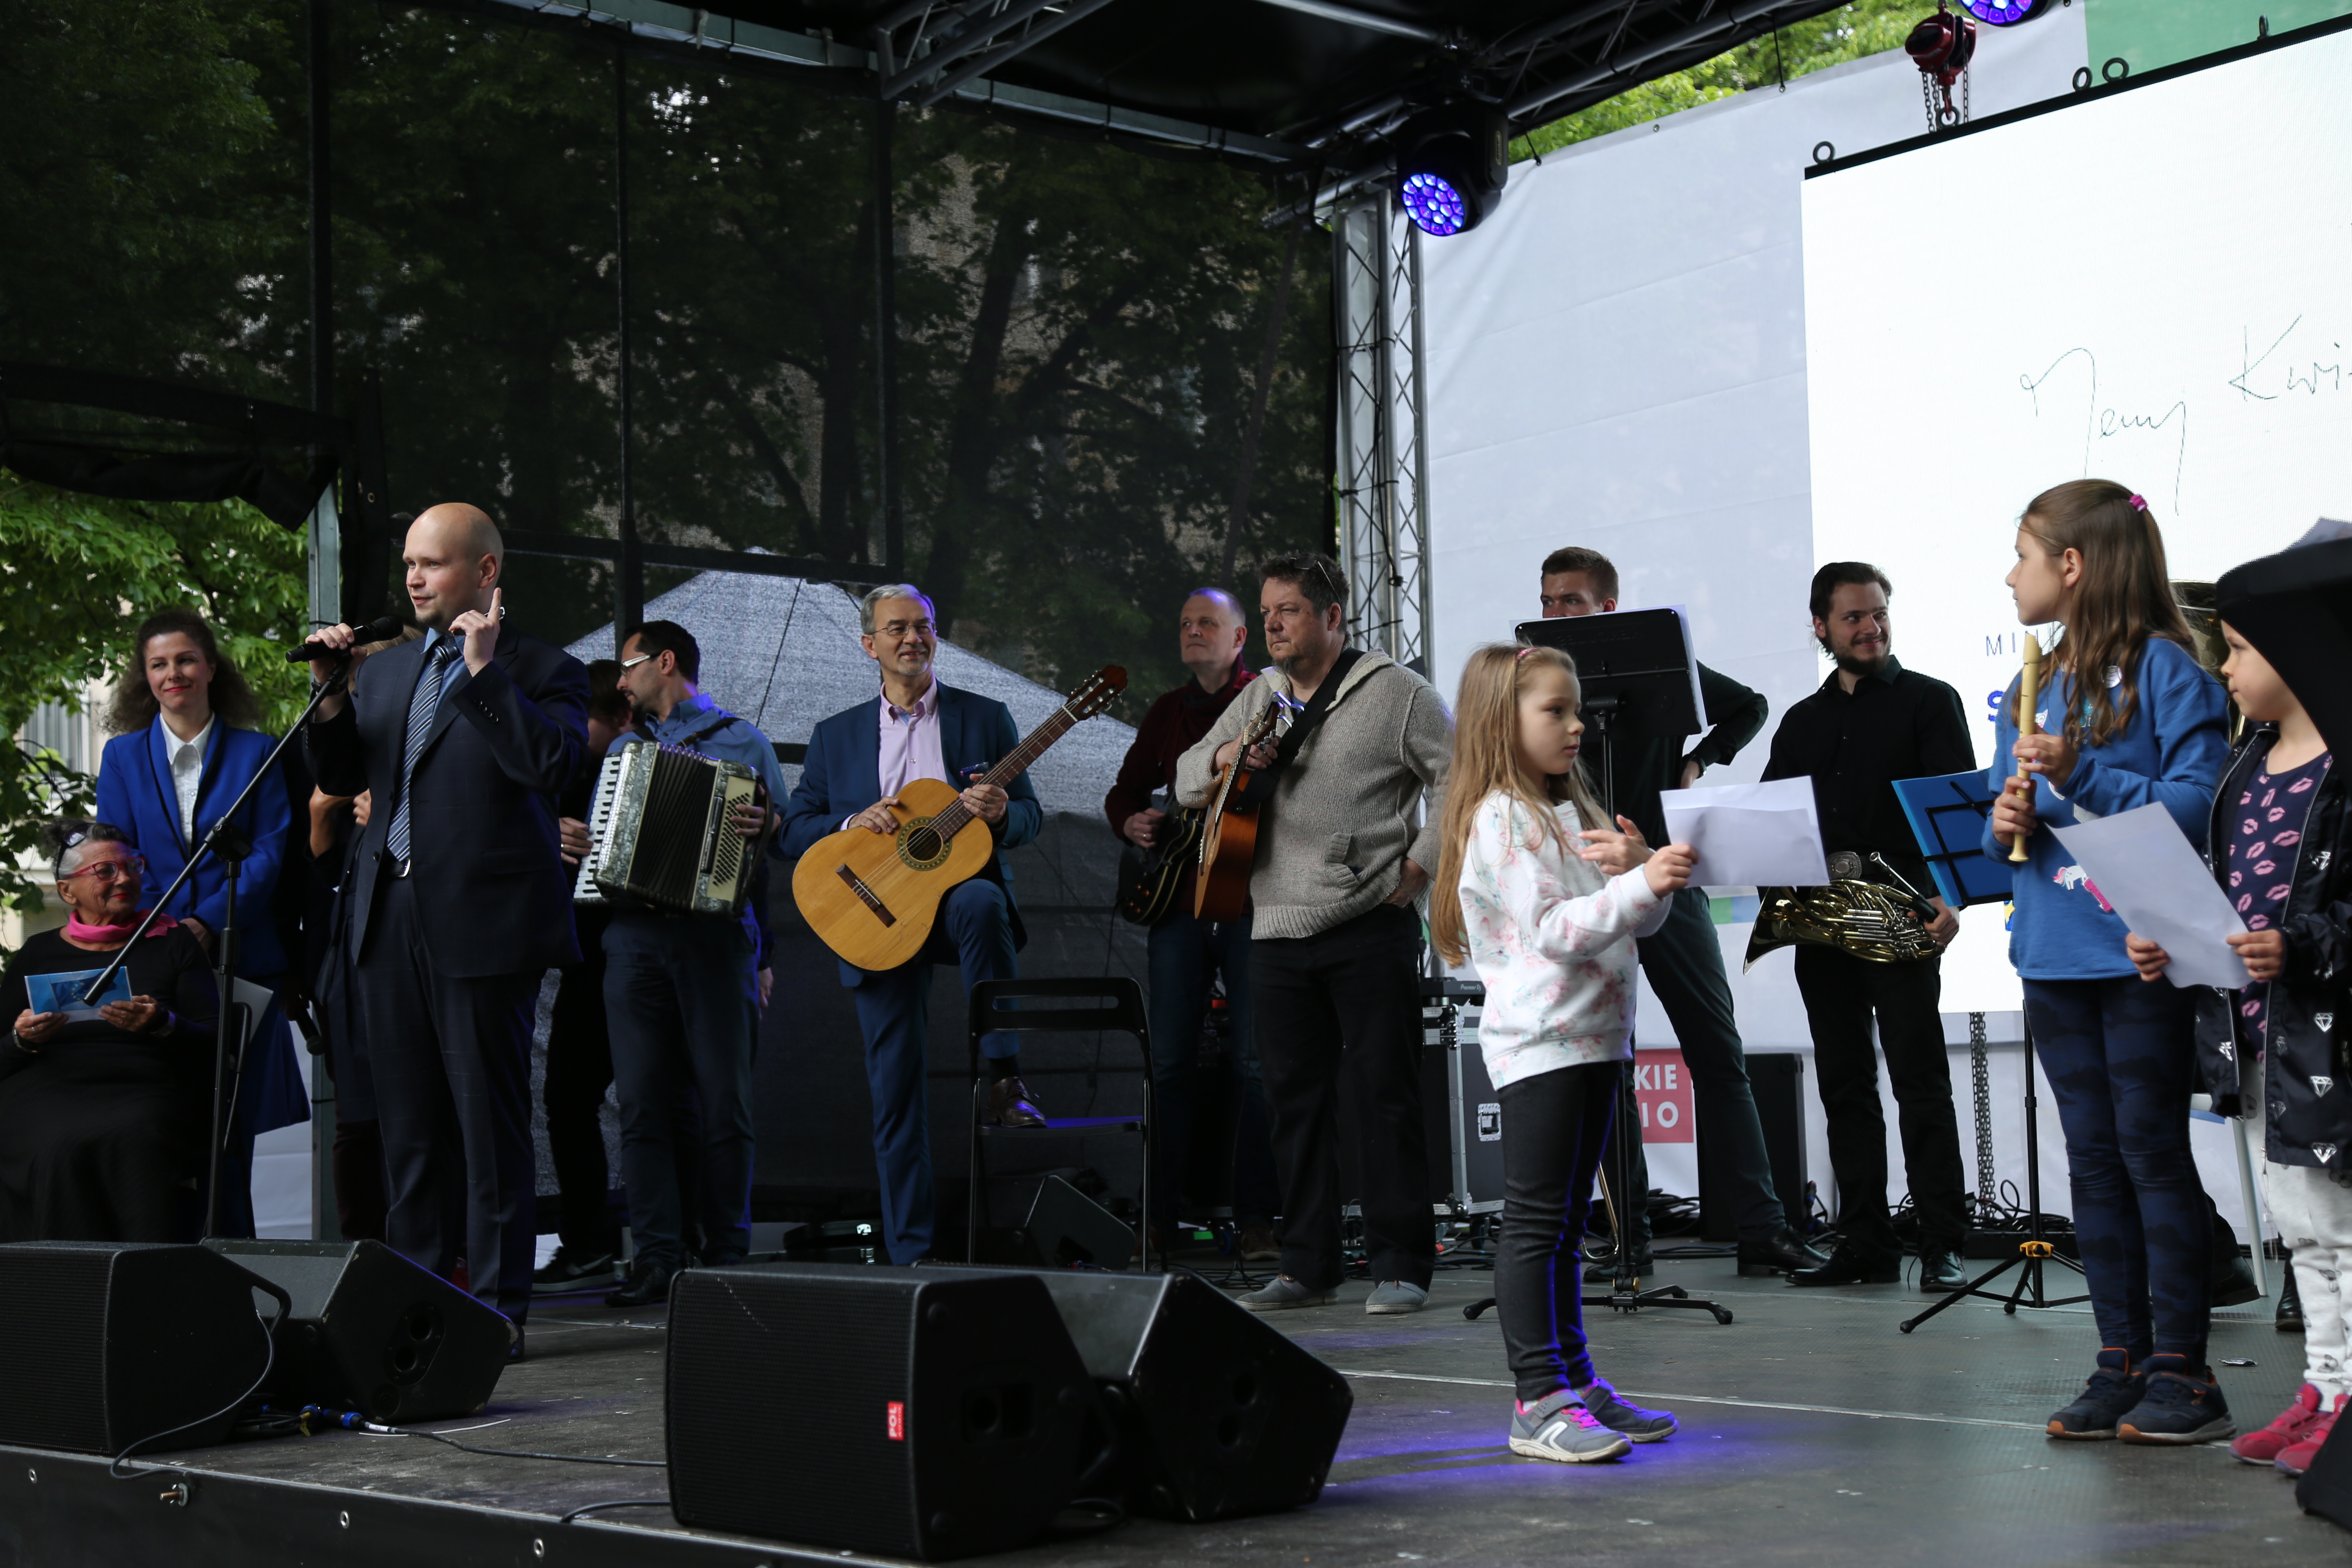 Orkiestra wraz z ministrem Kwiecińskim, który w dłoni trzyma gitarę przygotowują się do występu